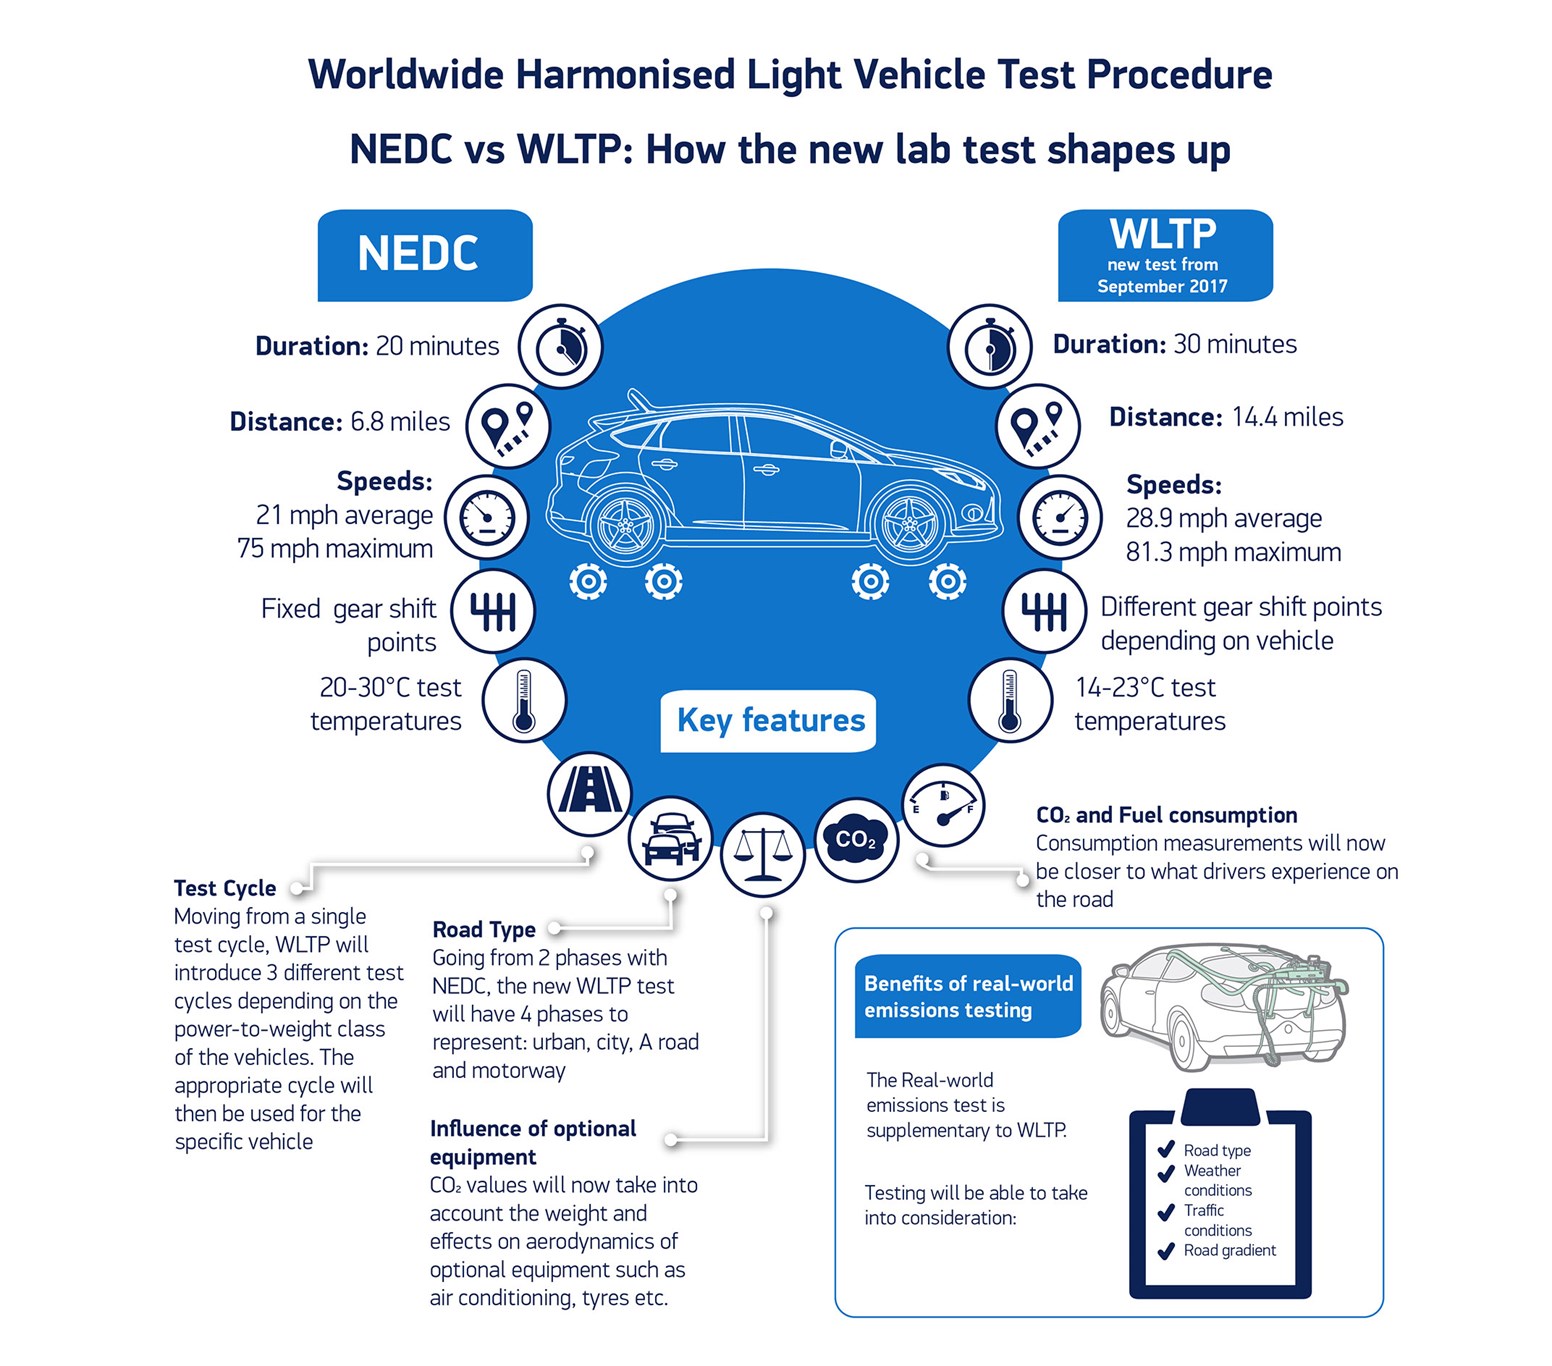 WLTP Worldwide Harmonised Light Vehicles Test Procedure